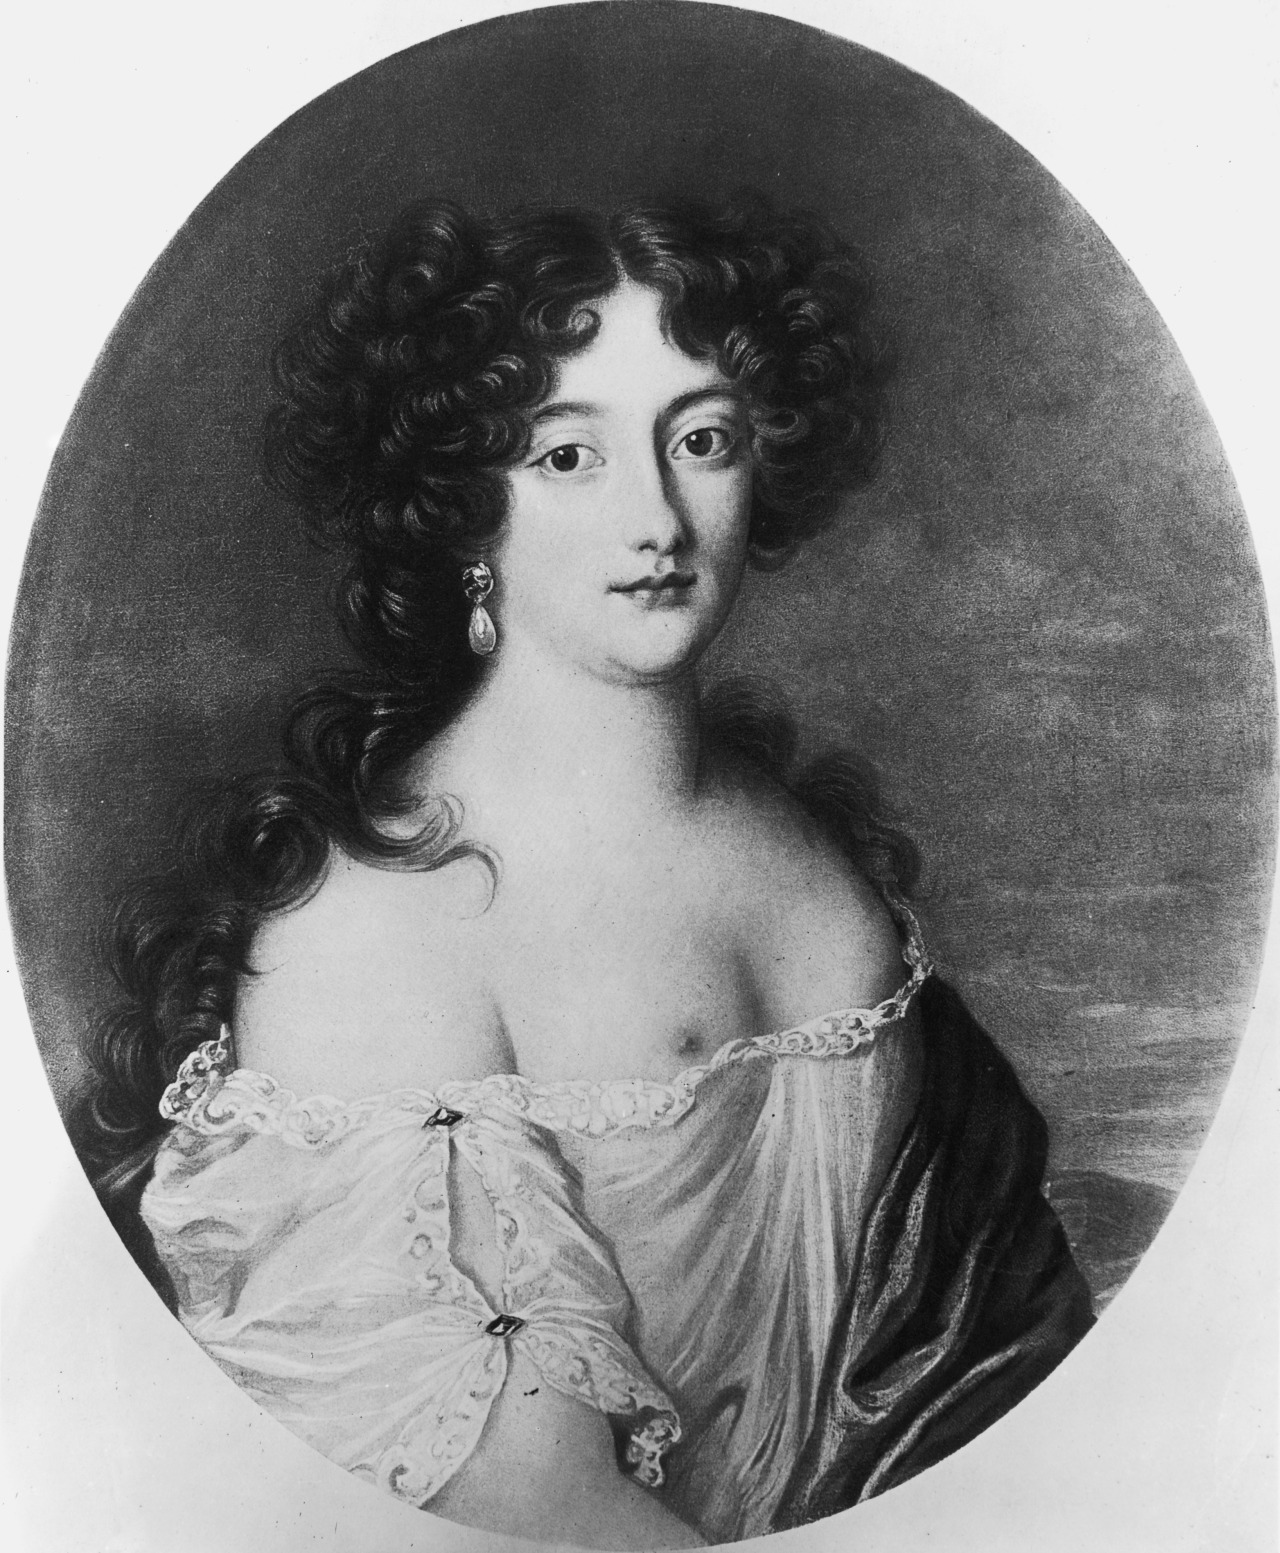 <p><strong>Хортензия Манчини (1646&ndash;1699)</strong><br />
Племенница на кардинал Мазарини, главен министър на Франция, Хортенз Манчини е била любовница на Чарлз II, крал на Англия, Шотландия и Ирландия. Тя е четвъртата от известните сестри Манчини, които заедно с две свои братовчедки бяха известни в двора на френския крал Луи XIV като Мазаринетки.</p>